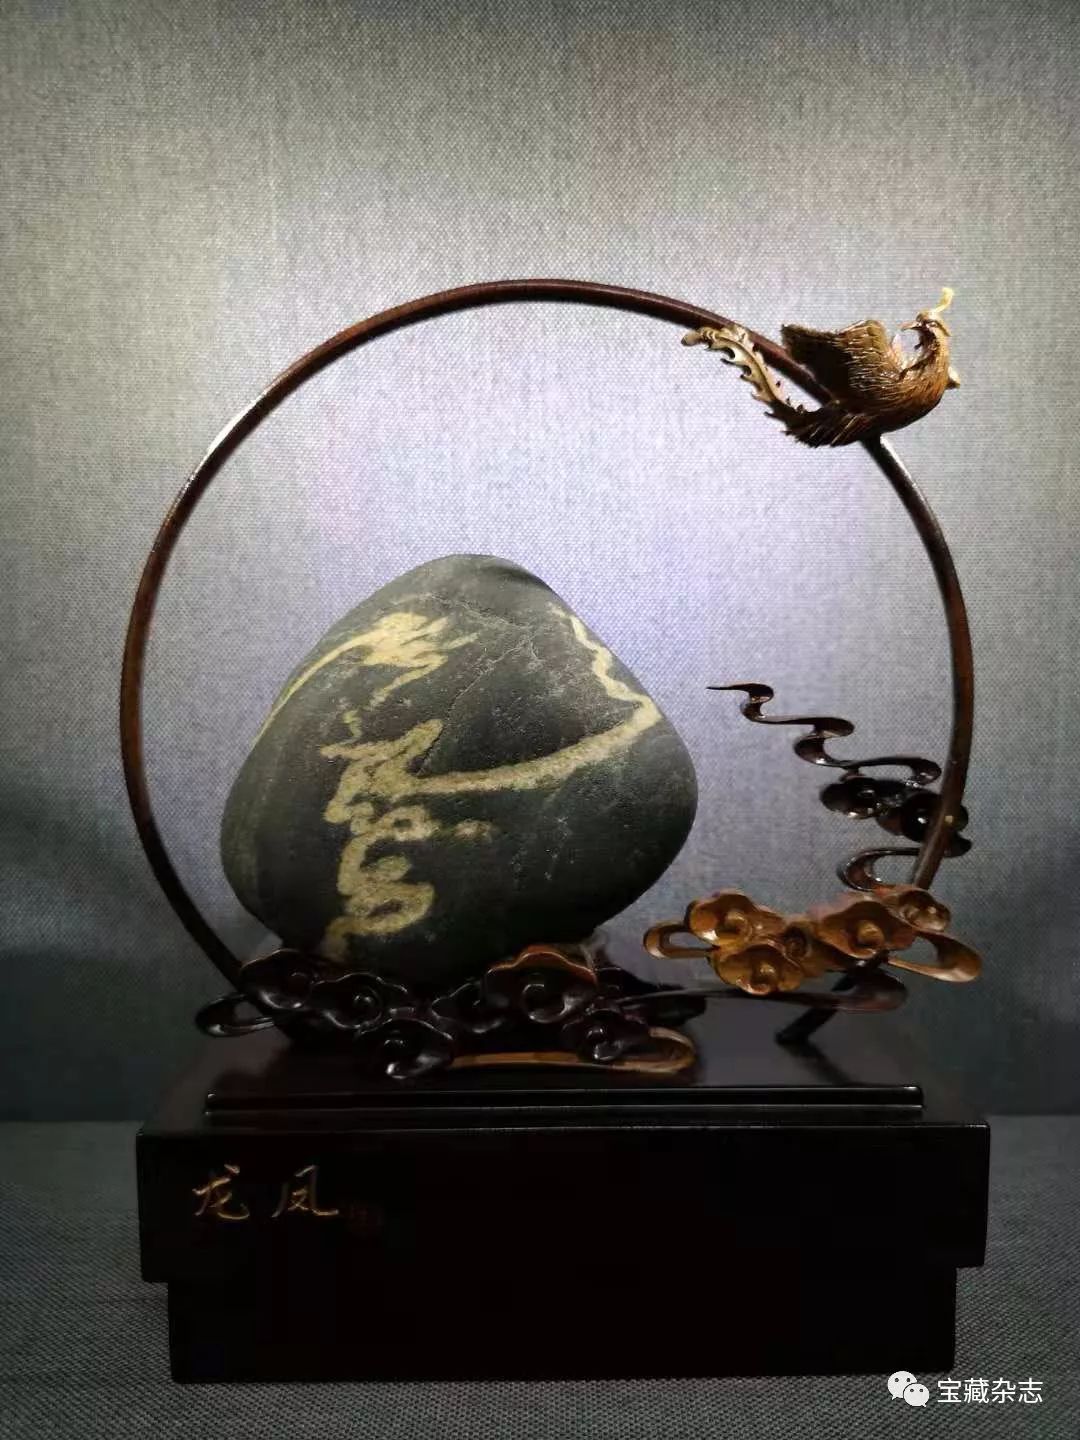 中国赏石艺术双年展,最神秘的大展开幕啦